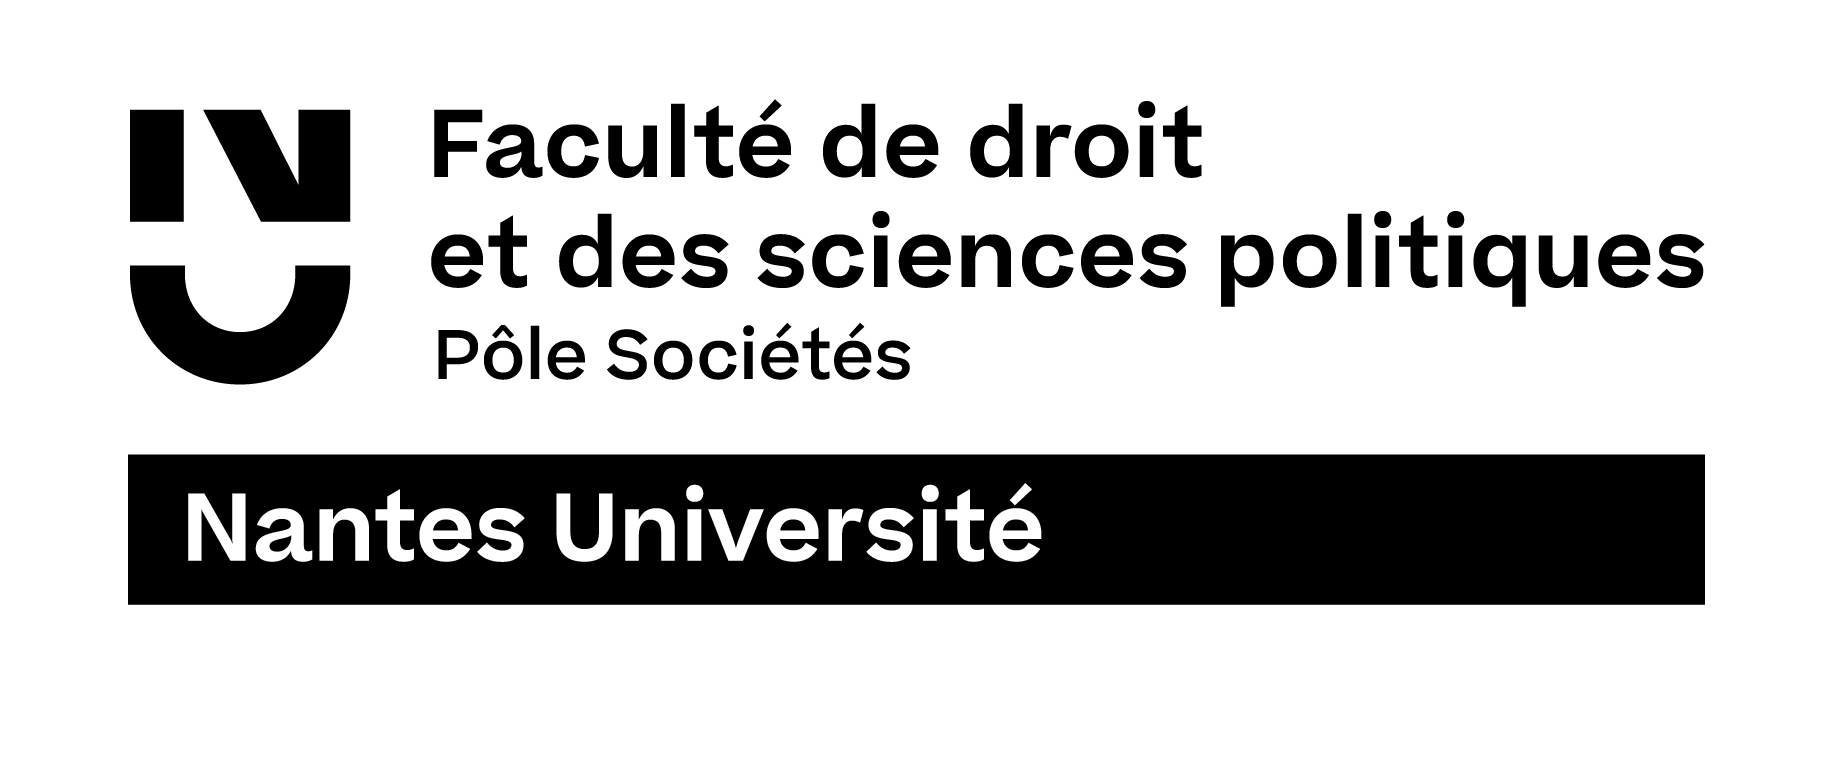 Nantes Université - Faculté de Droit